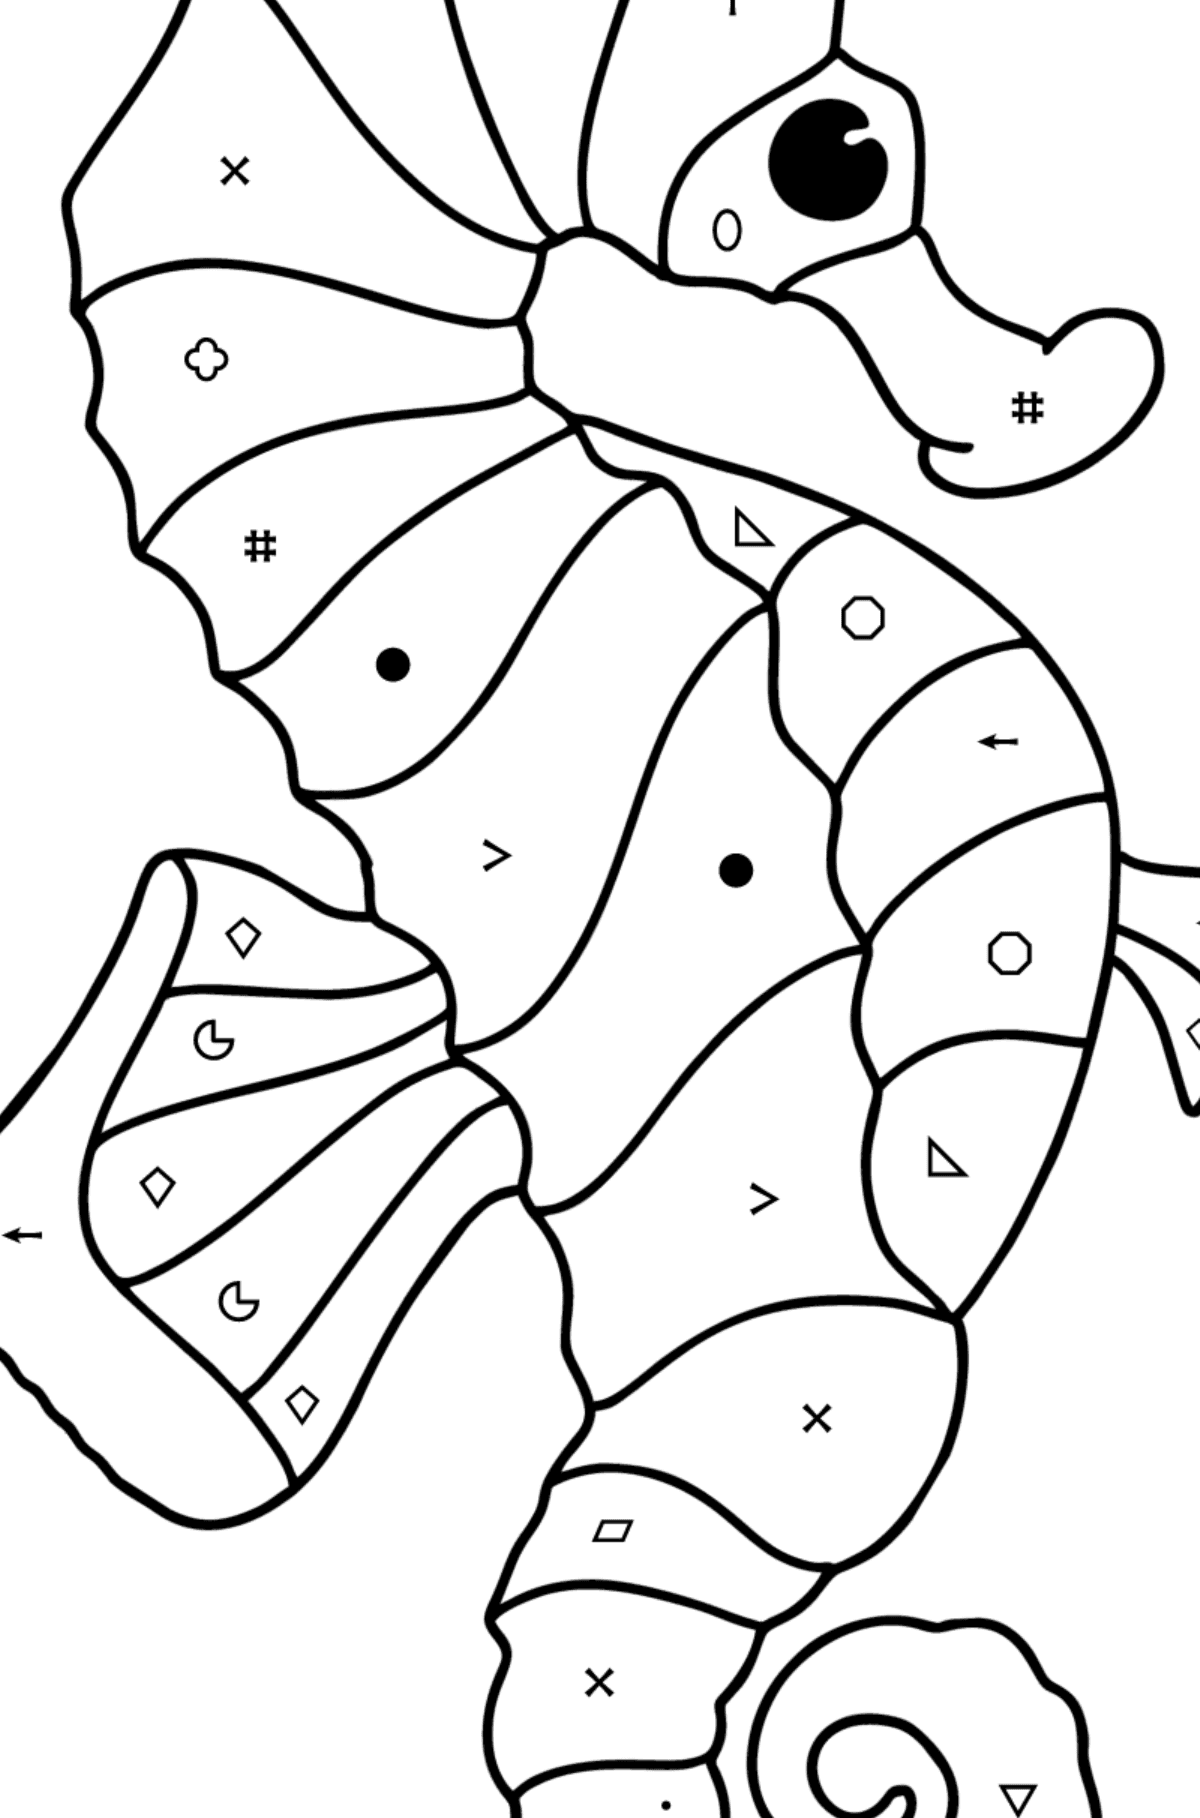 Coloriage Hippocampe - Coloriage par Symboles pour les Enfants